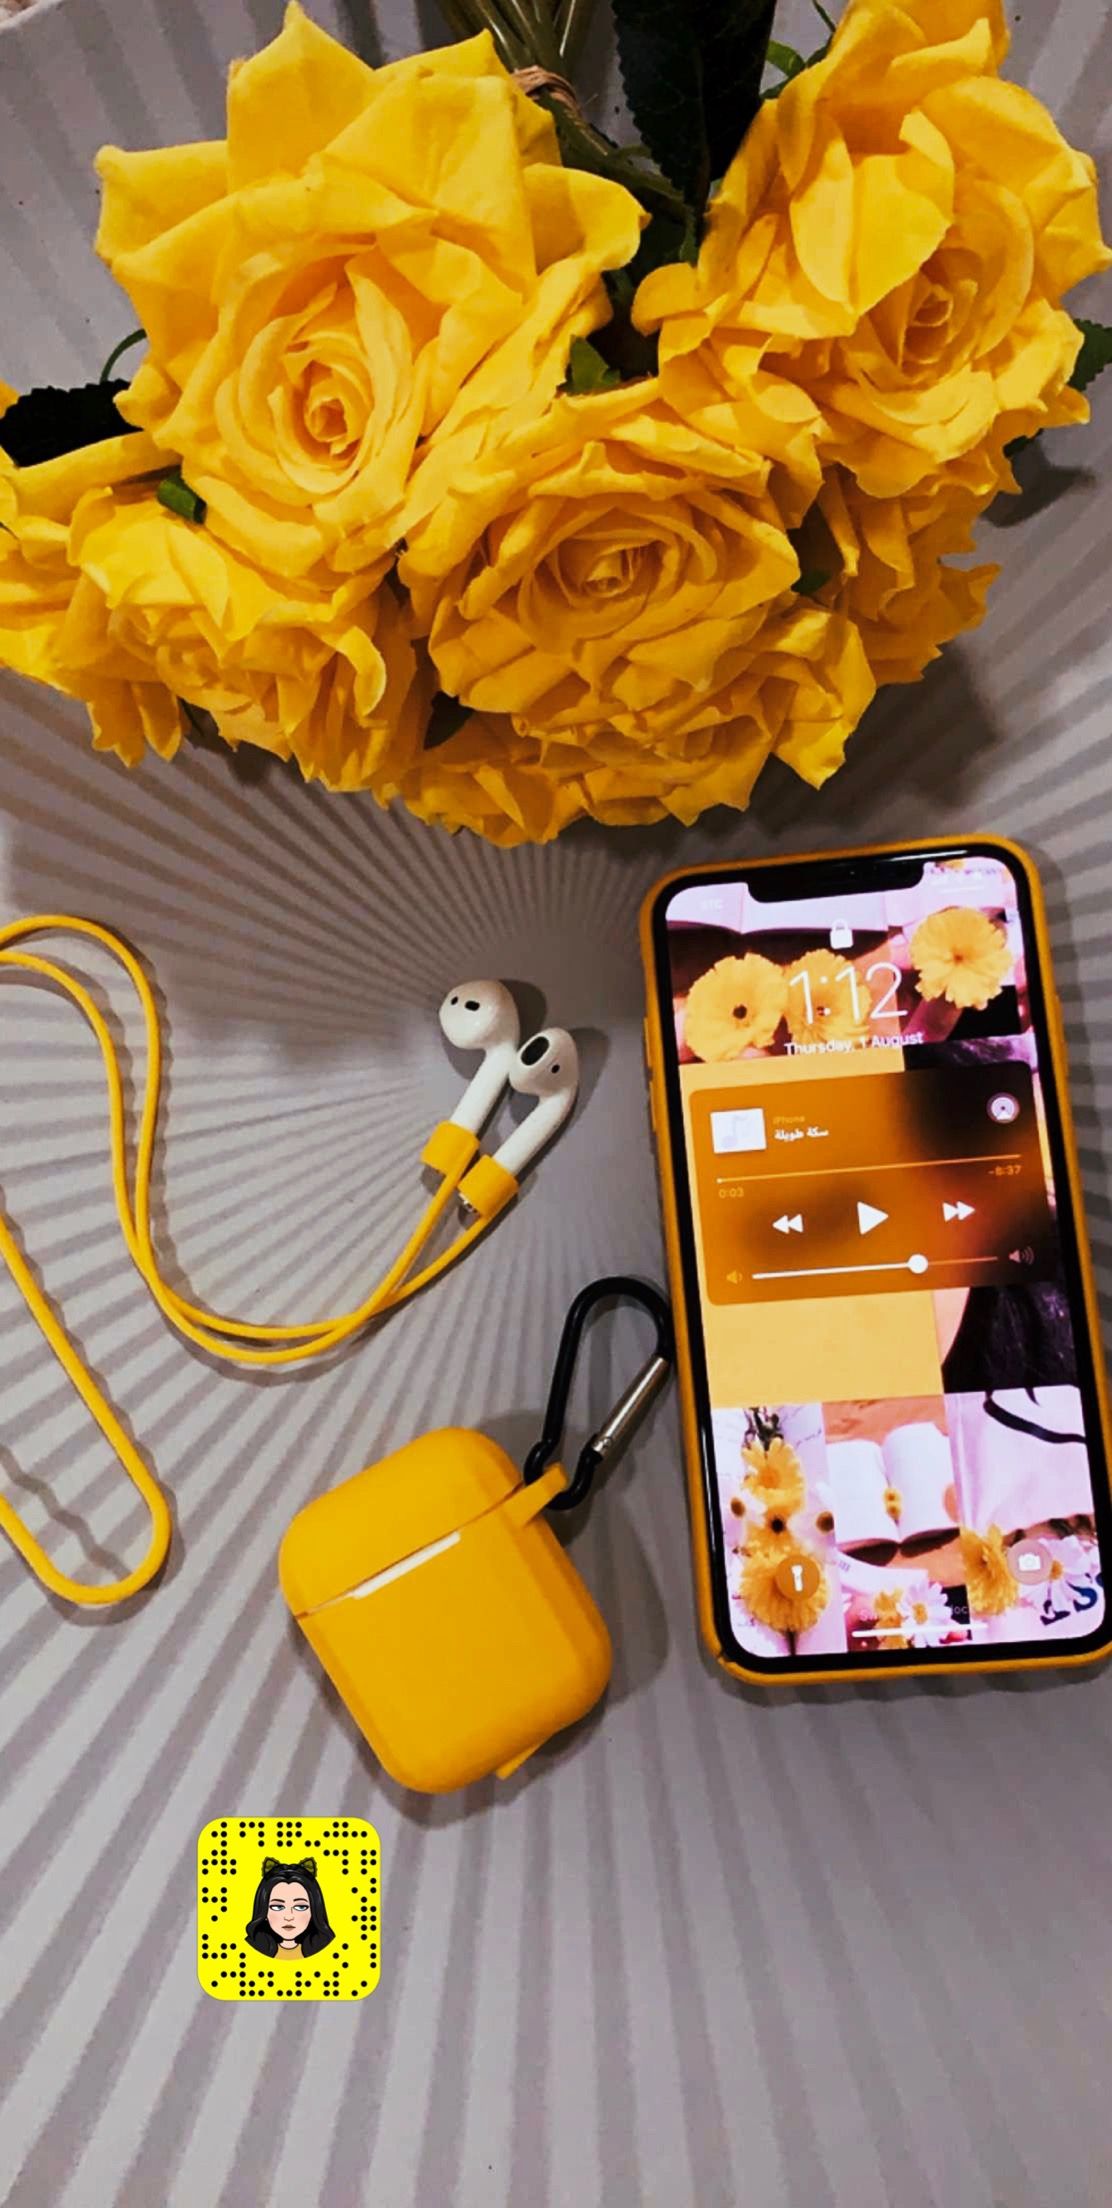 aplicación de fondo de pantalla de estado de ánimo,amarillo,caja del teléfono móvil,naranja,accesorios para teléfono móvil,tecnología